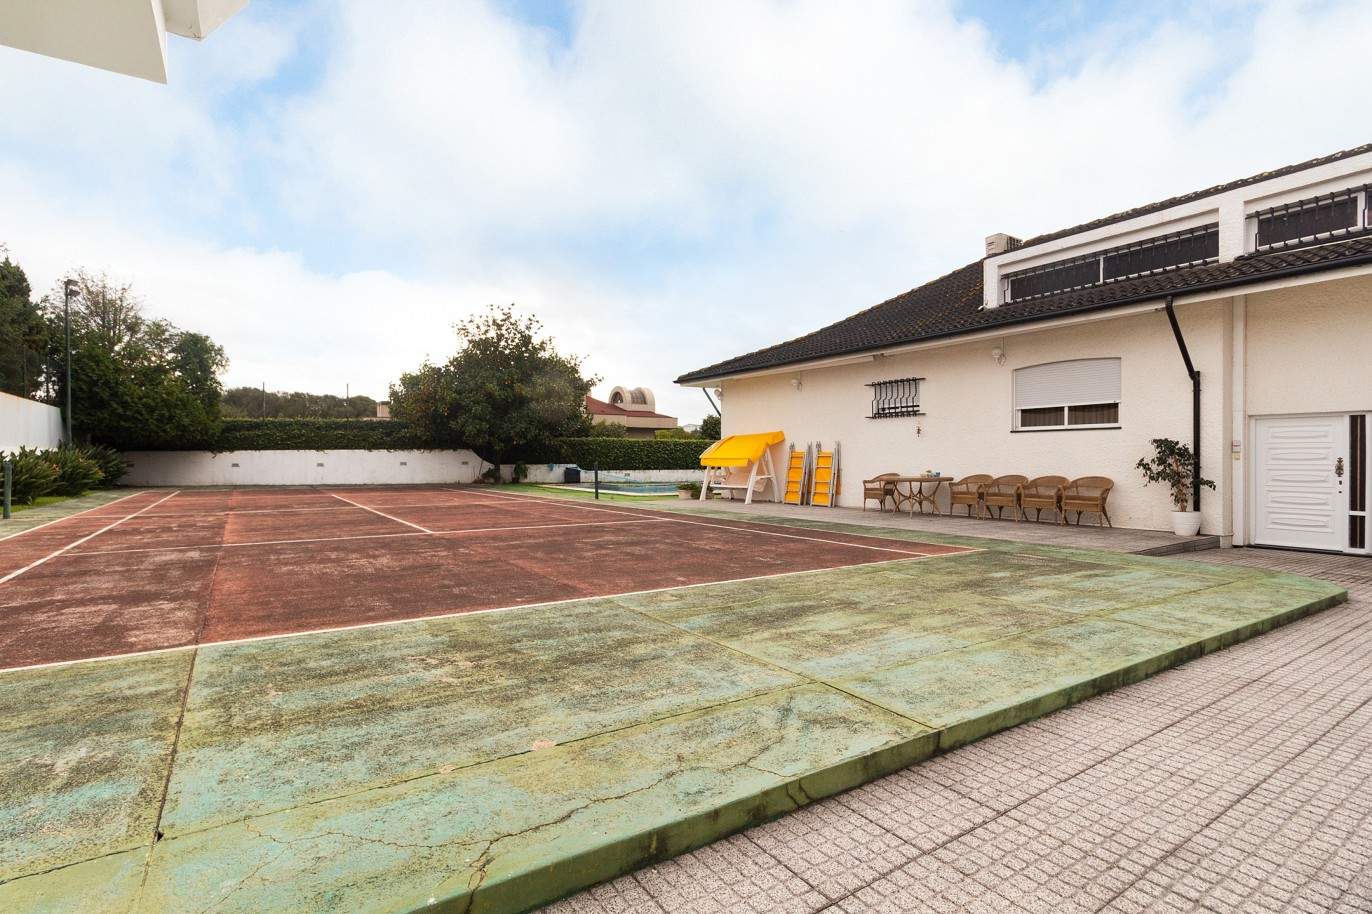 Villa de 4 dormitorios con piscina, pista de tenis y jardín, en venta, en Maia, Oporto, Portugal_210631